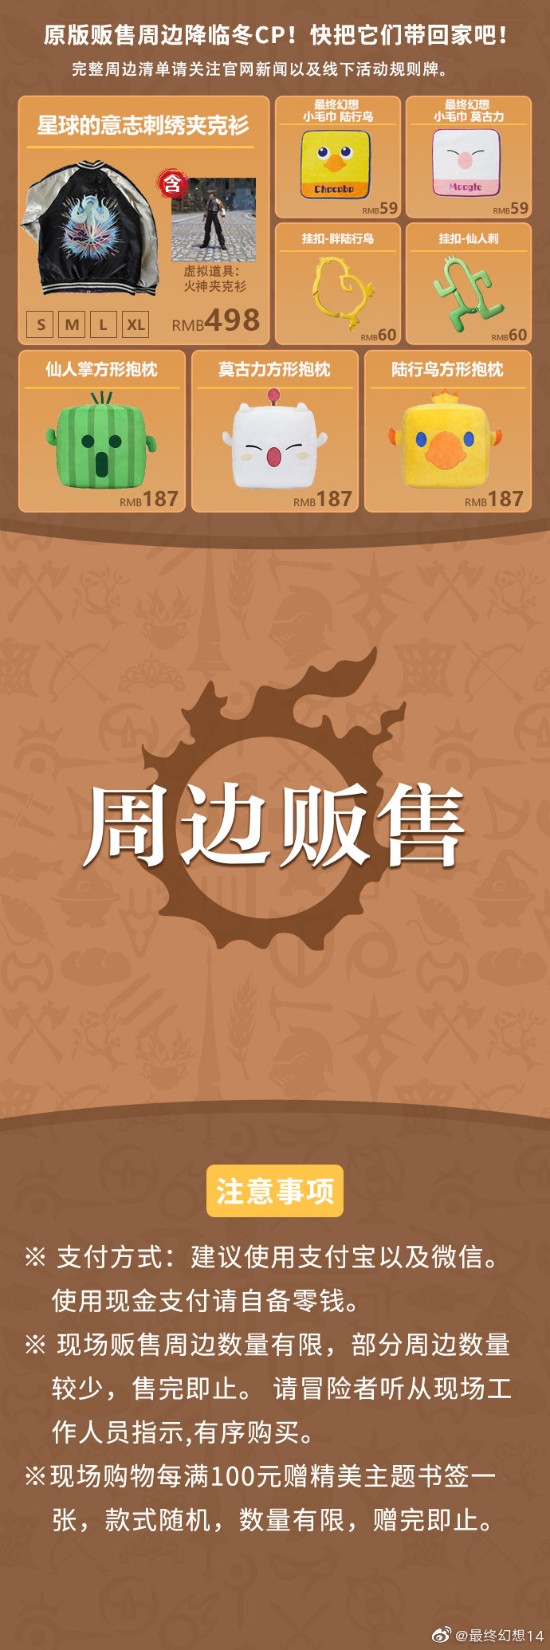 《最终幻想14》官宣参展上海CP27多样活动、海量周边